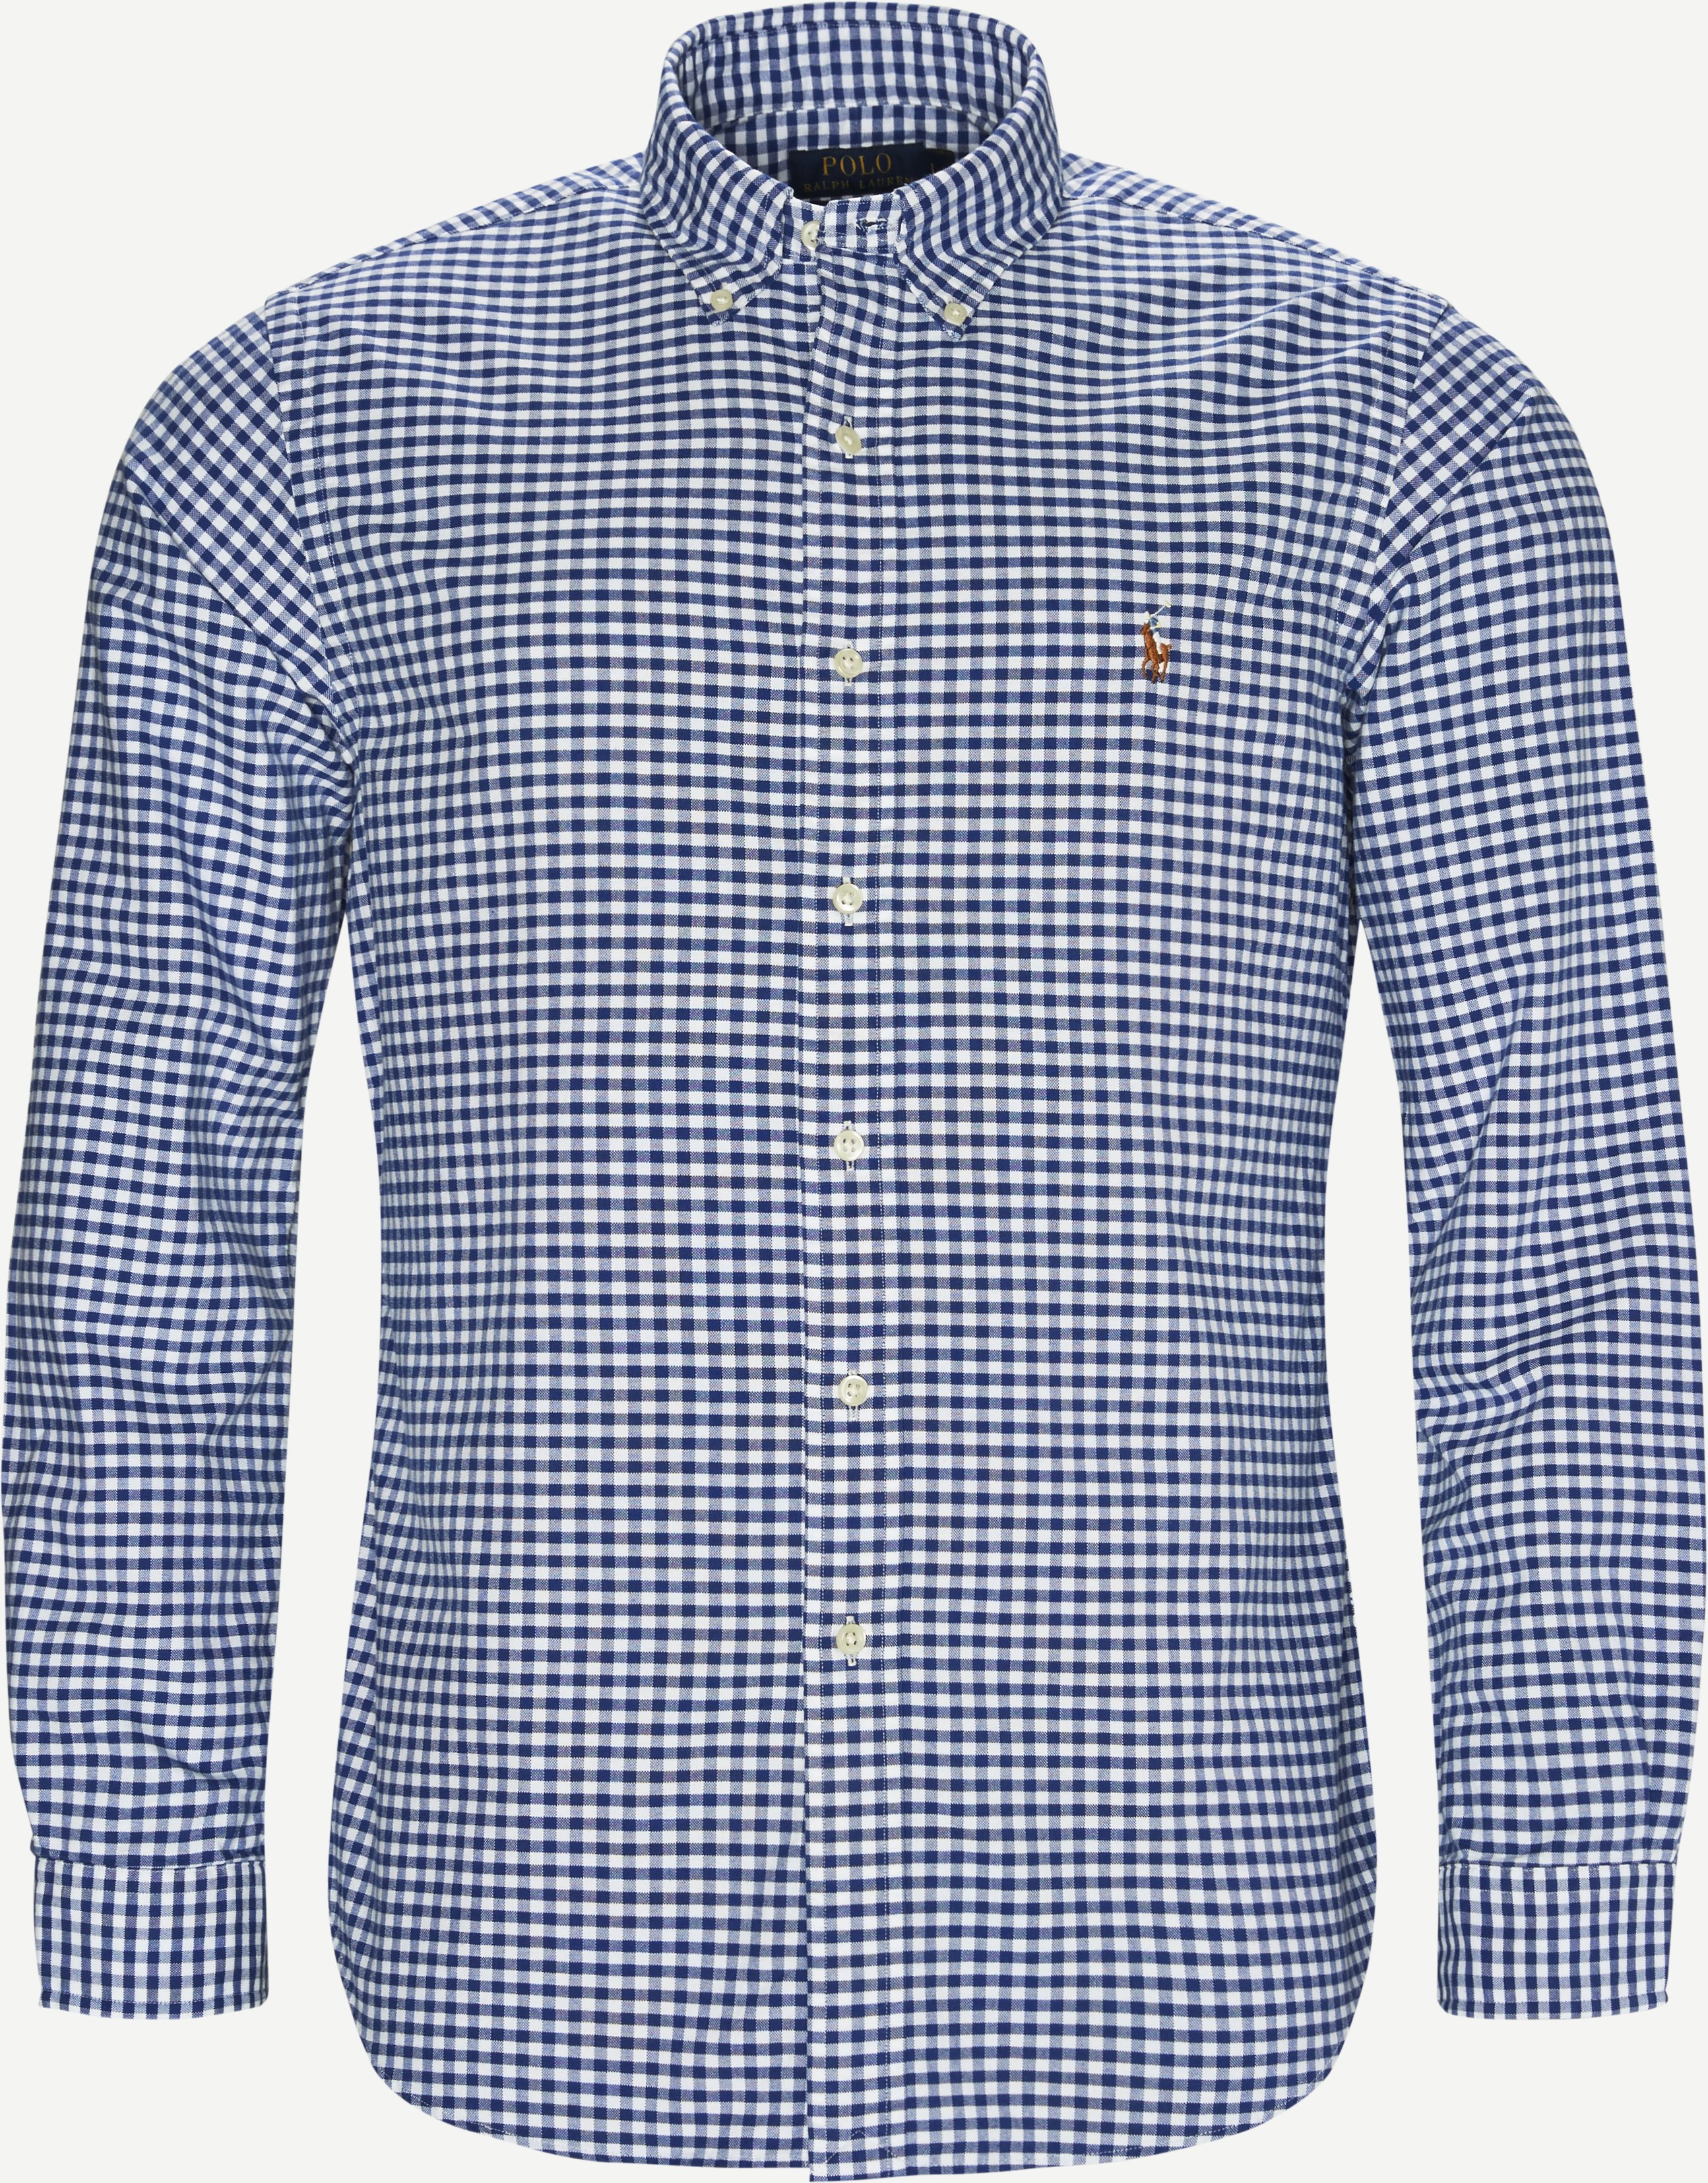 Polo Ralph Lauren Shirts 710549084010/710548535007 Blue